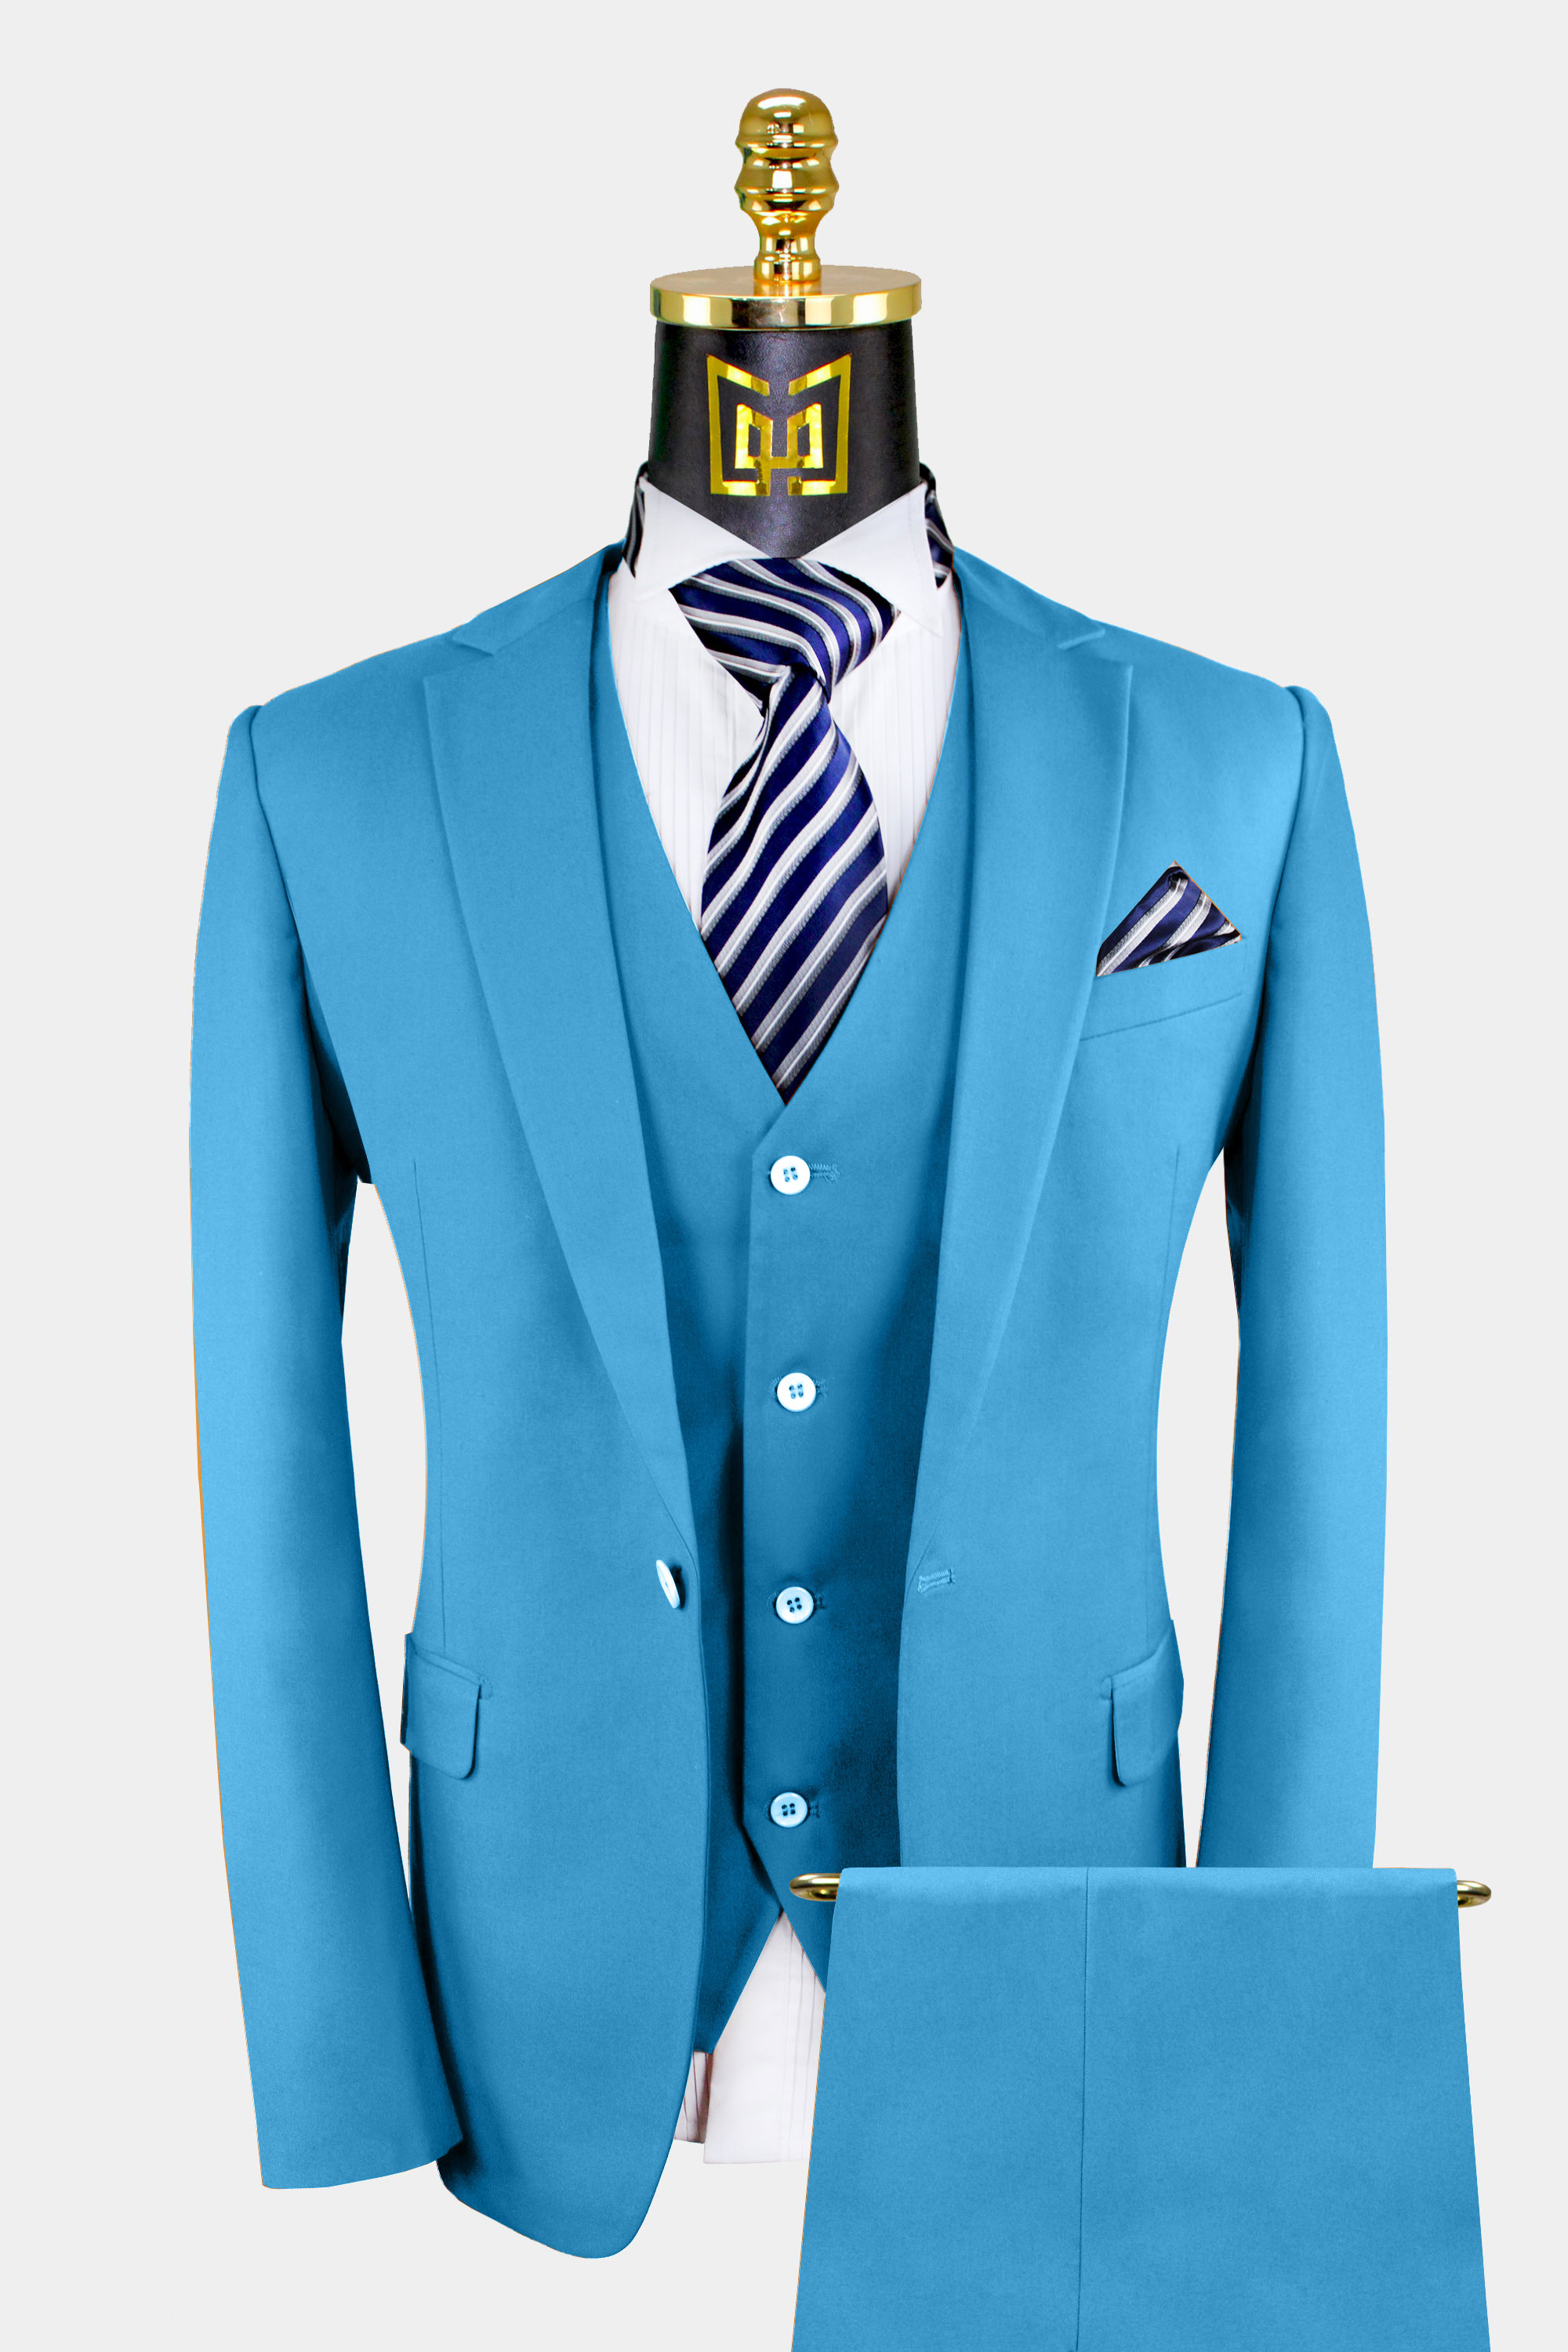 Classic Cerulean Light Blue Suit - 3 Piece